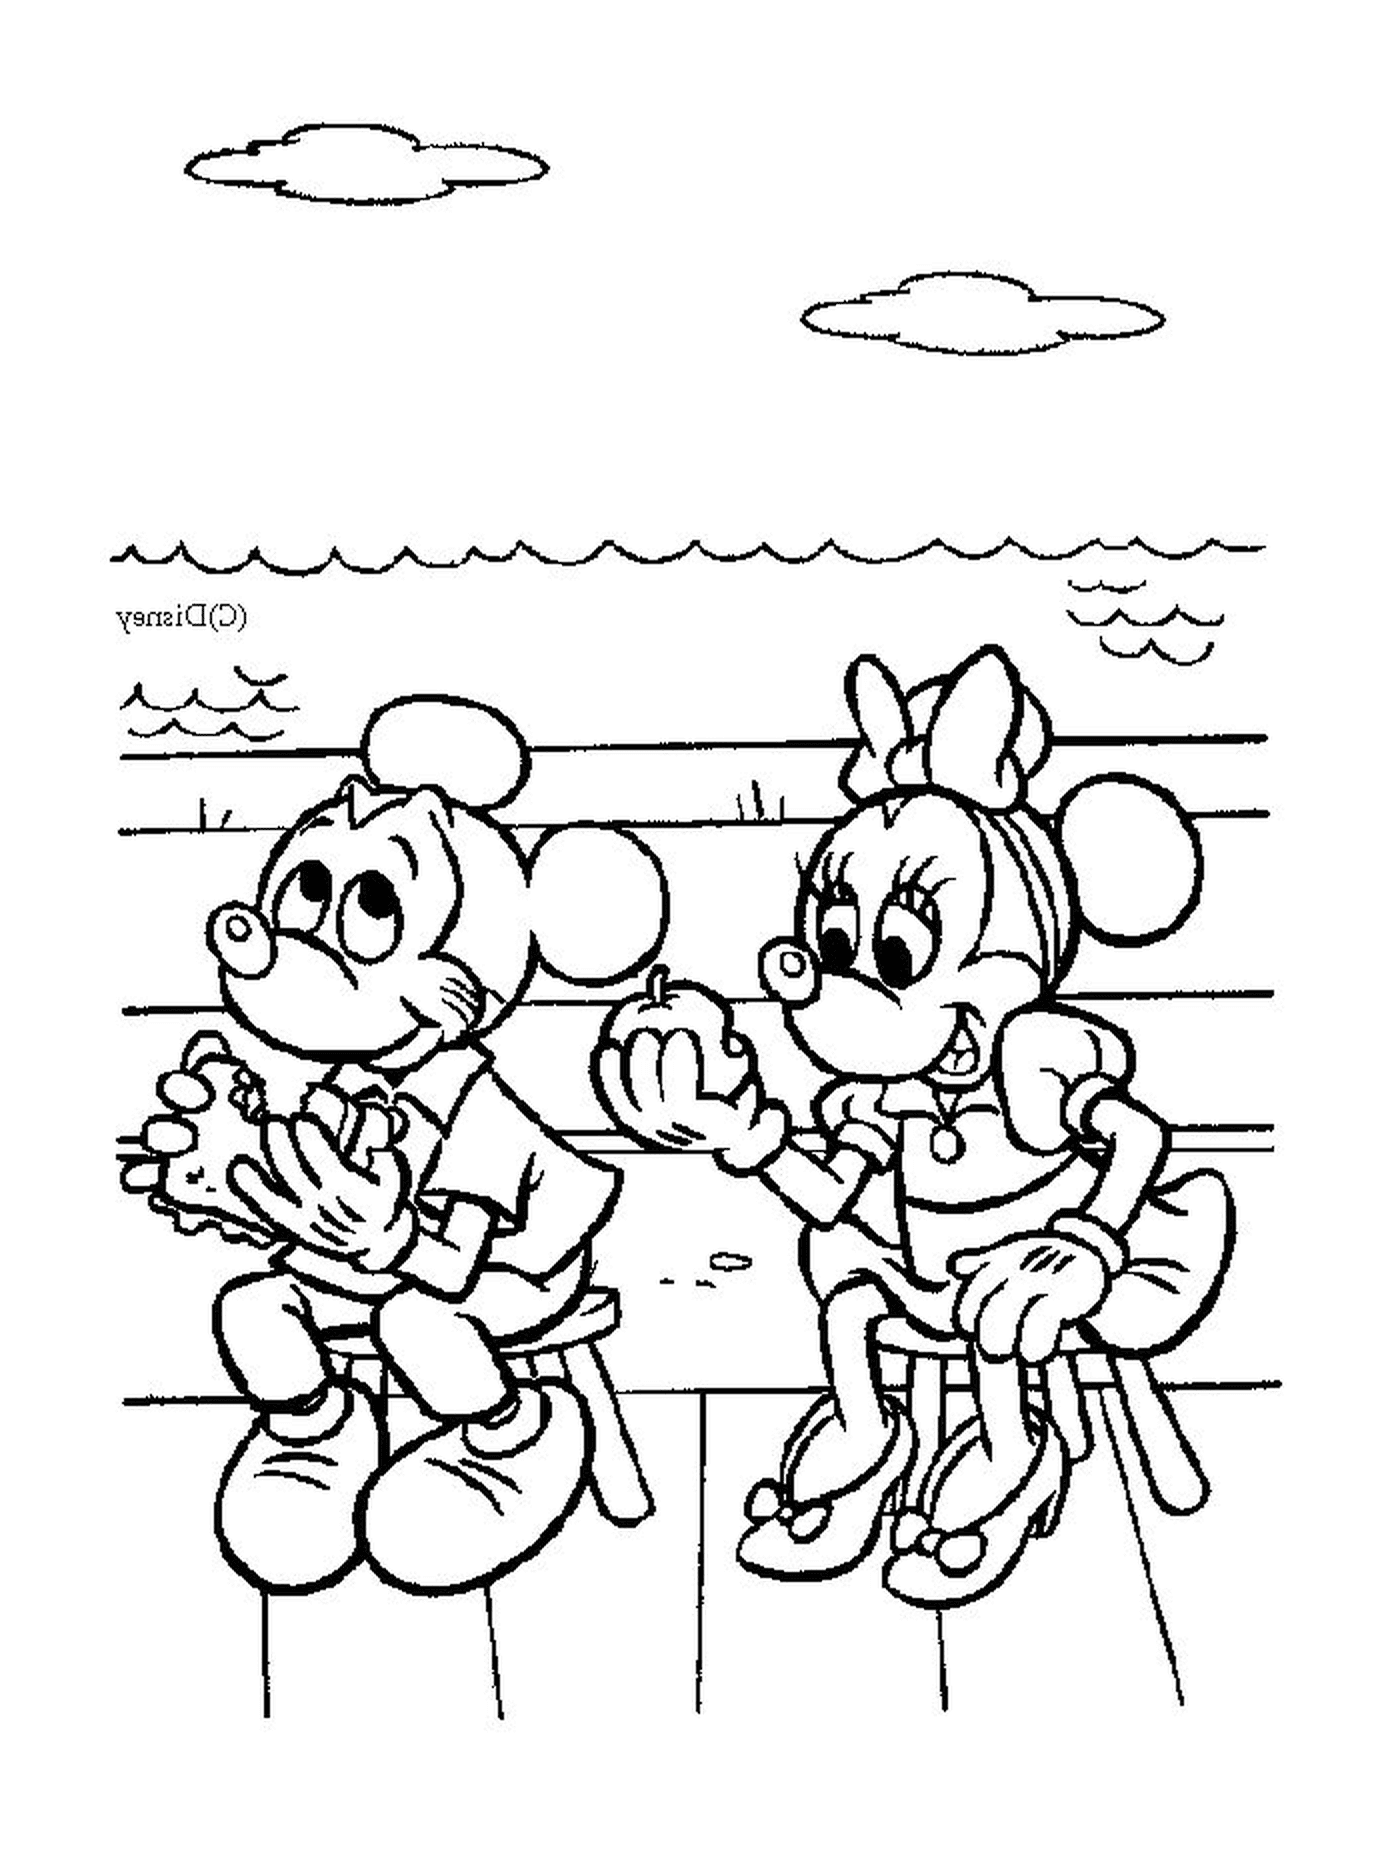  Topolino e Minnie Mouse seduti su una panchina 